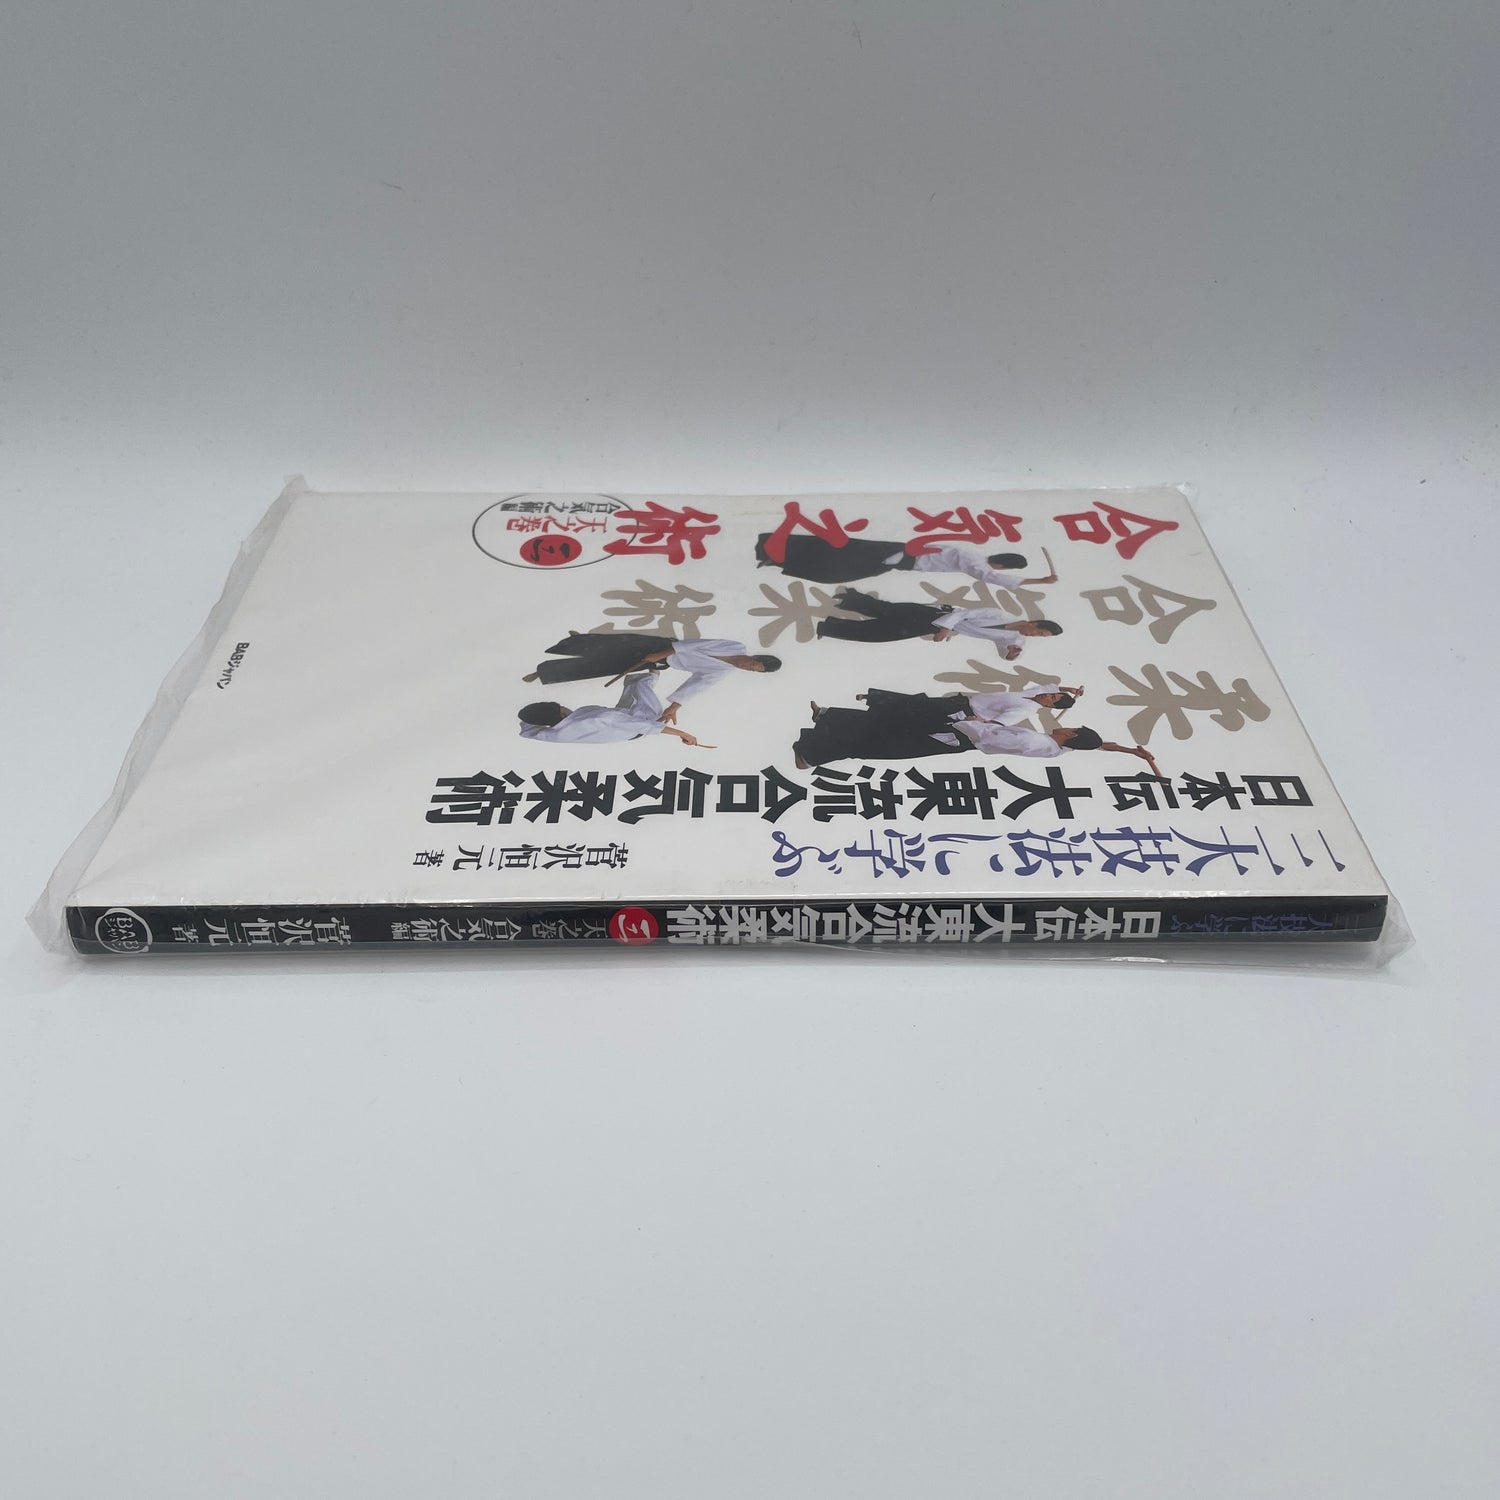 Nihonden Daito Ryu Aikijujutsu Libro 3: Aiki no Jutsu de Kogen Sugasawa (Usado)